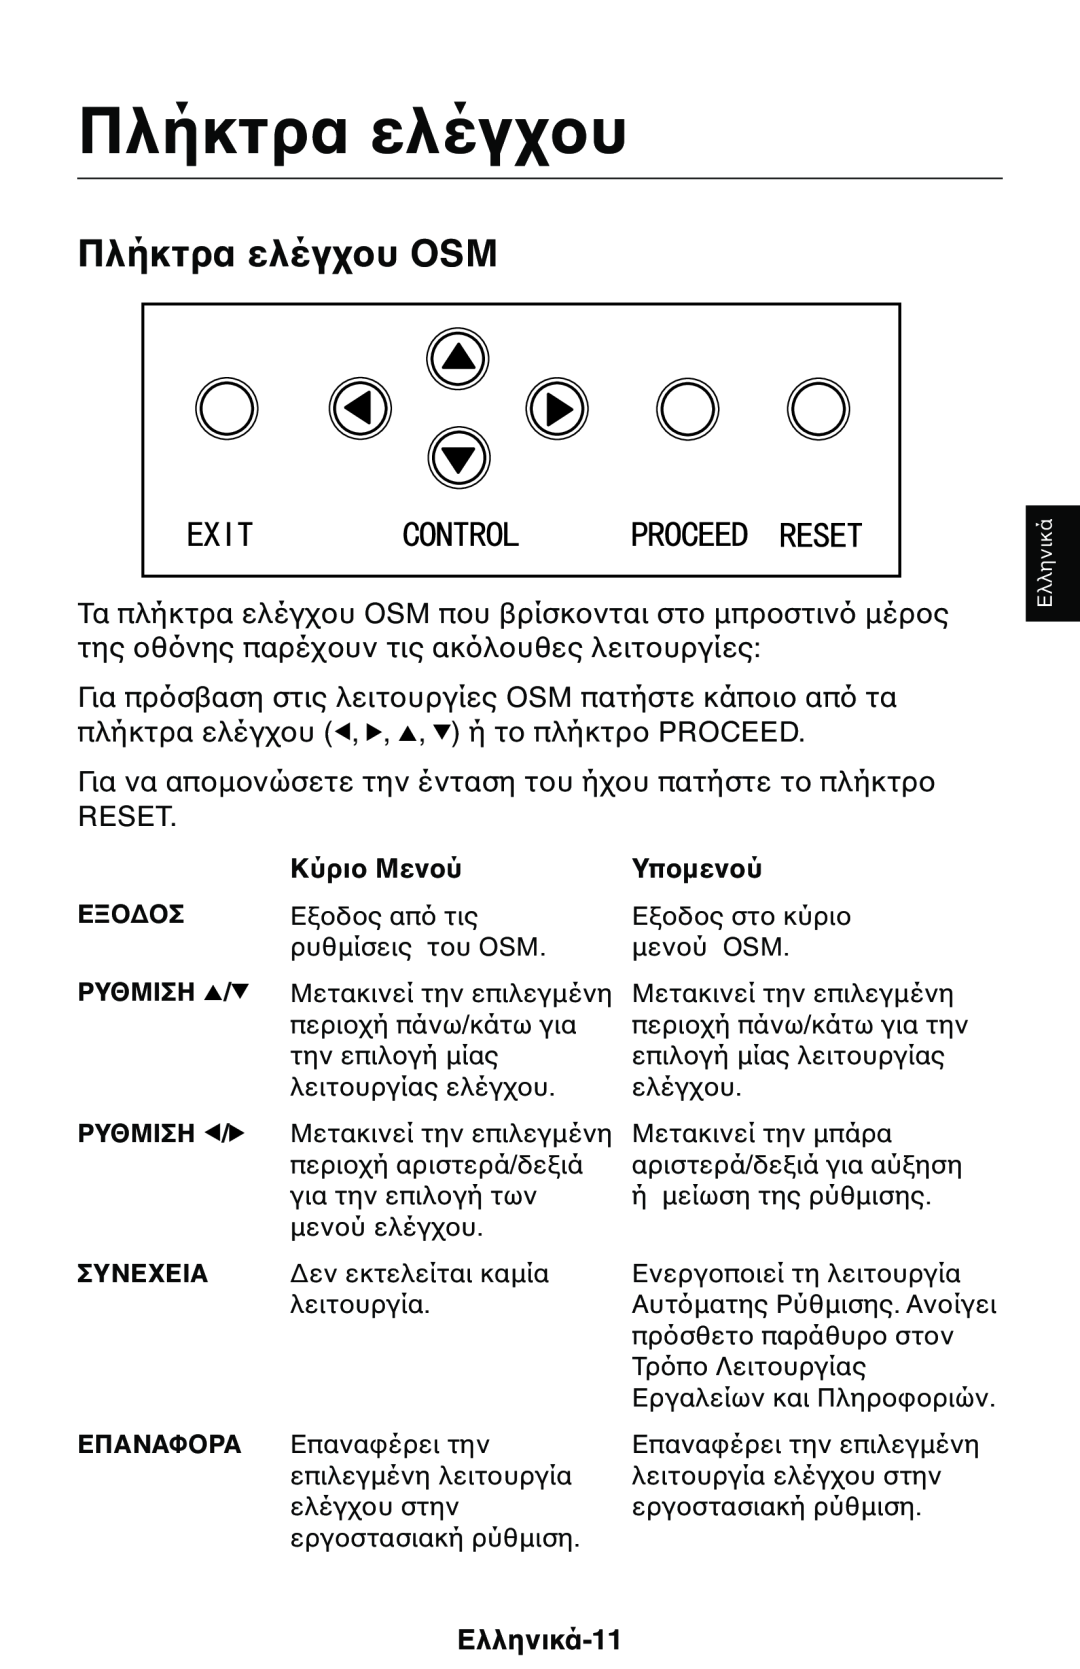 NEC 1525M manual Πλήκτρα ελέγ, Τα πλήκτρα ελέγ της, Για πρ, Για να απ, Reset, Ελληνικά-11, Κύρι, Ρυθμιση, Συνε, Επαναφα 